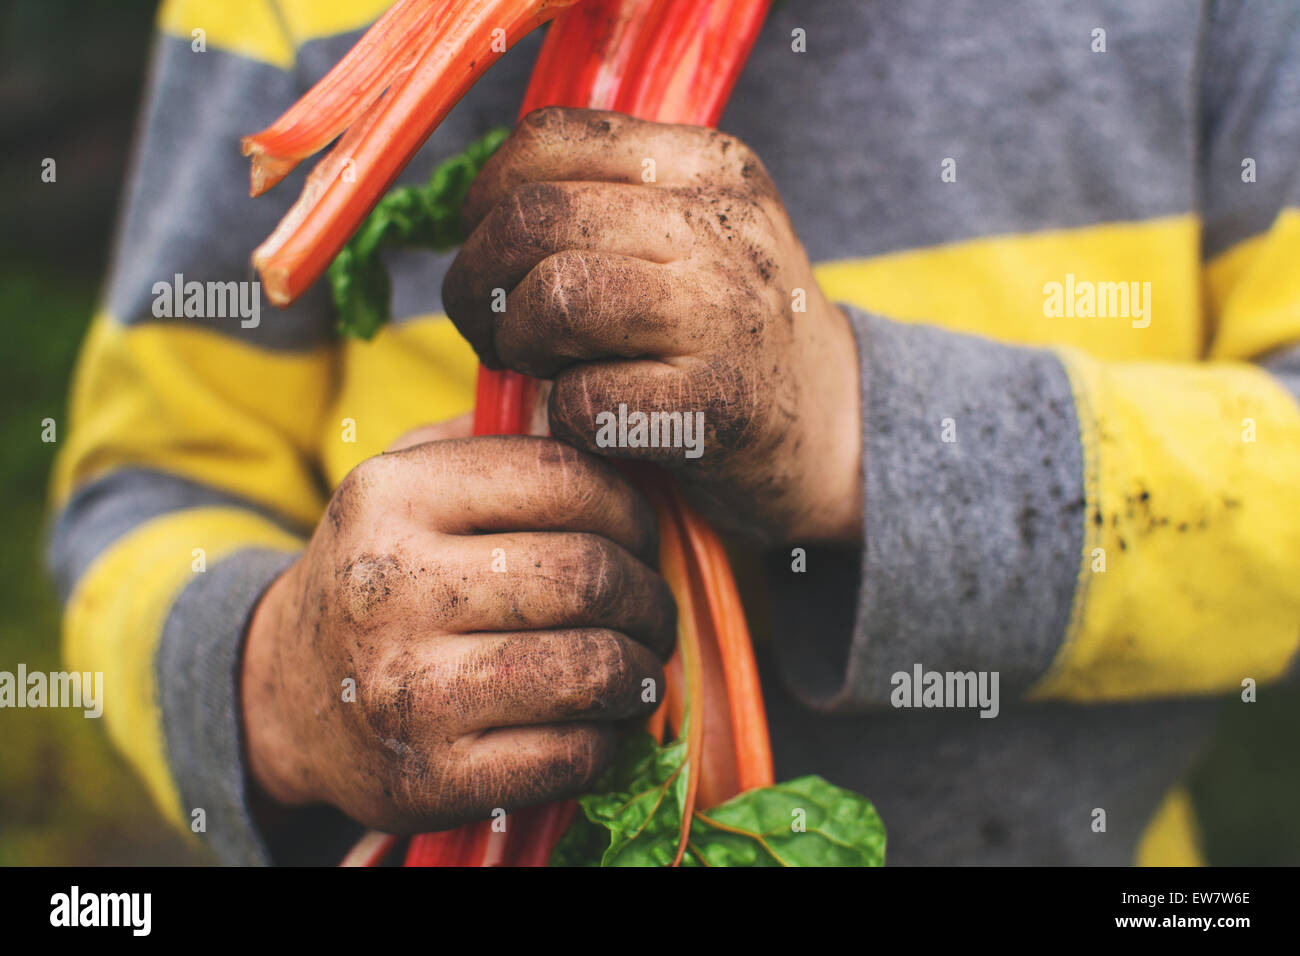 Ragazzo con mani sporche che che che tengono una bietola svizzera appena raccolta Foto Stock